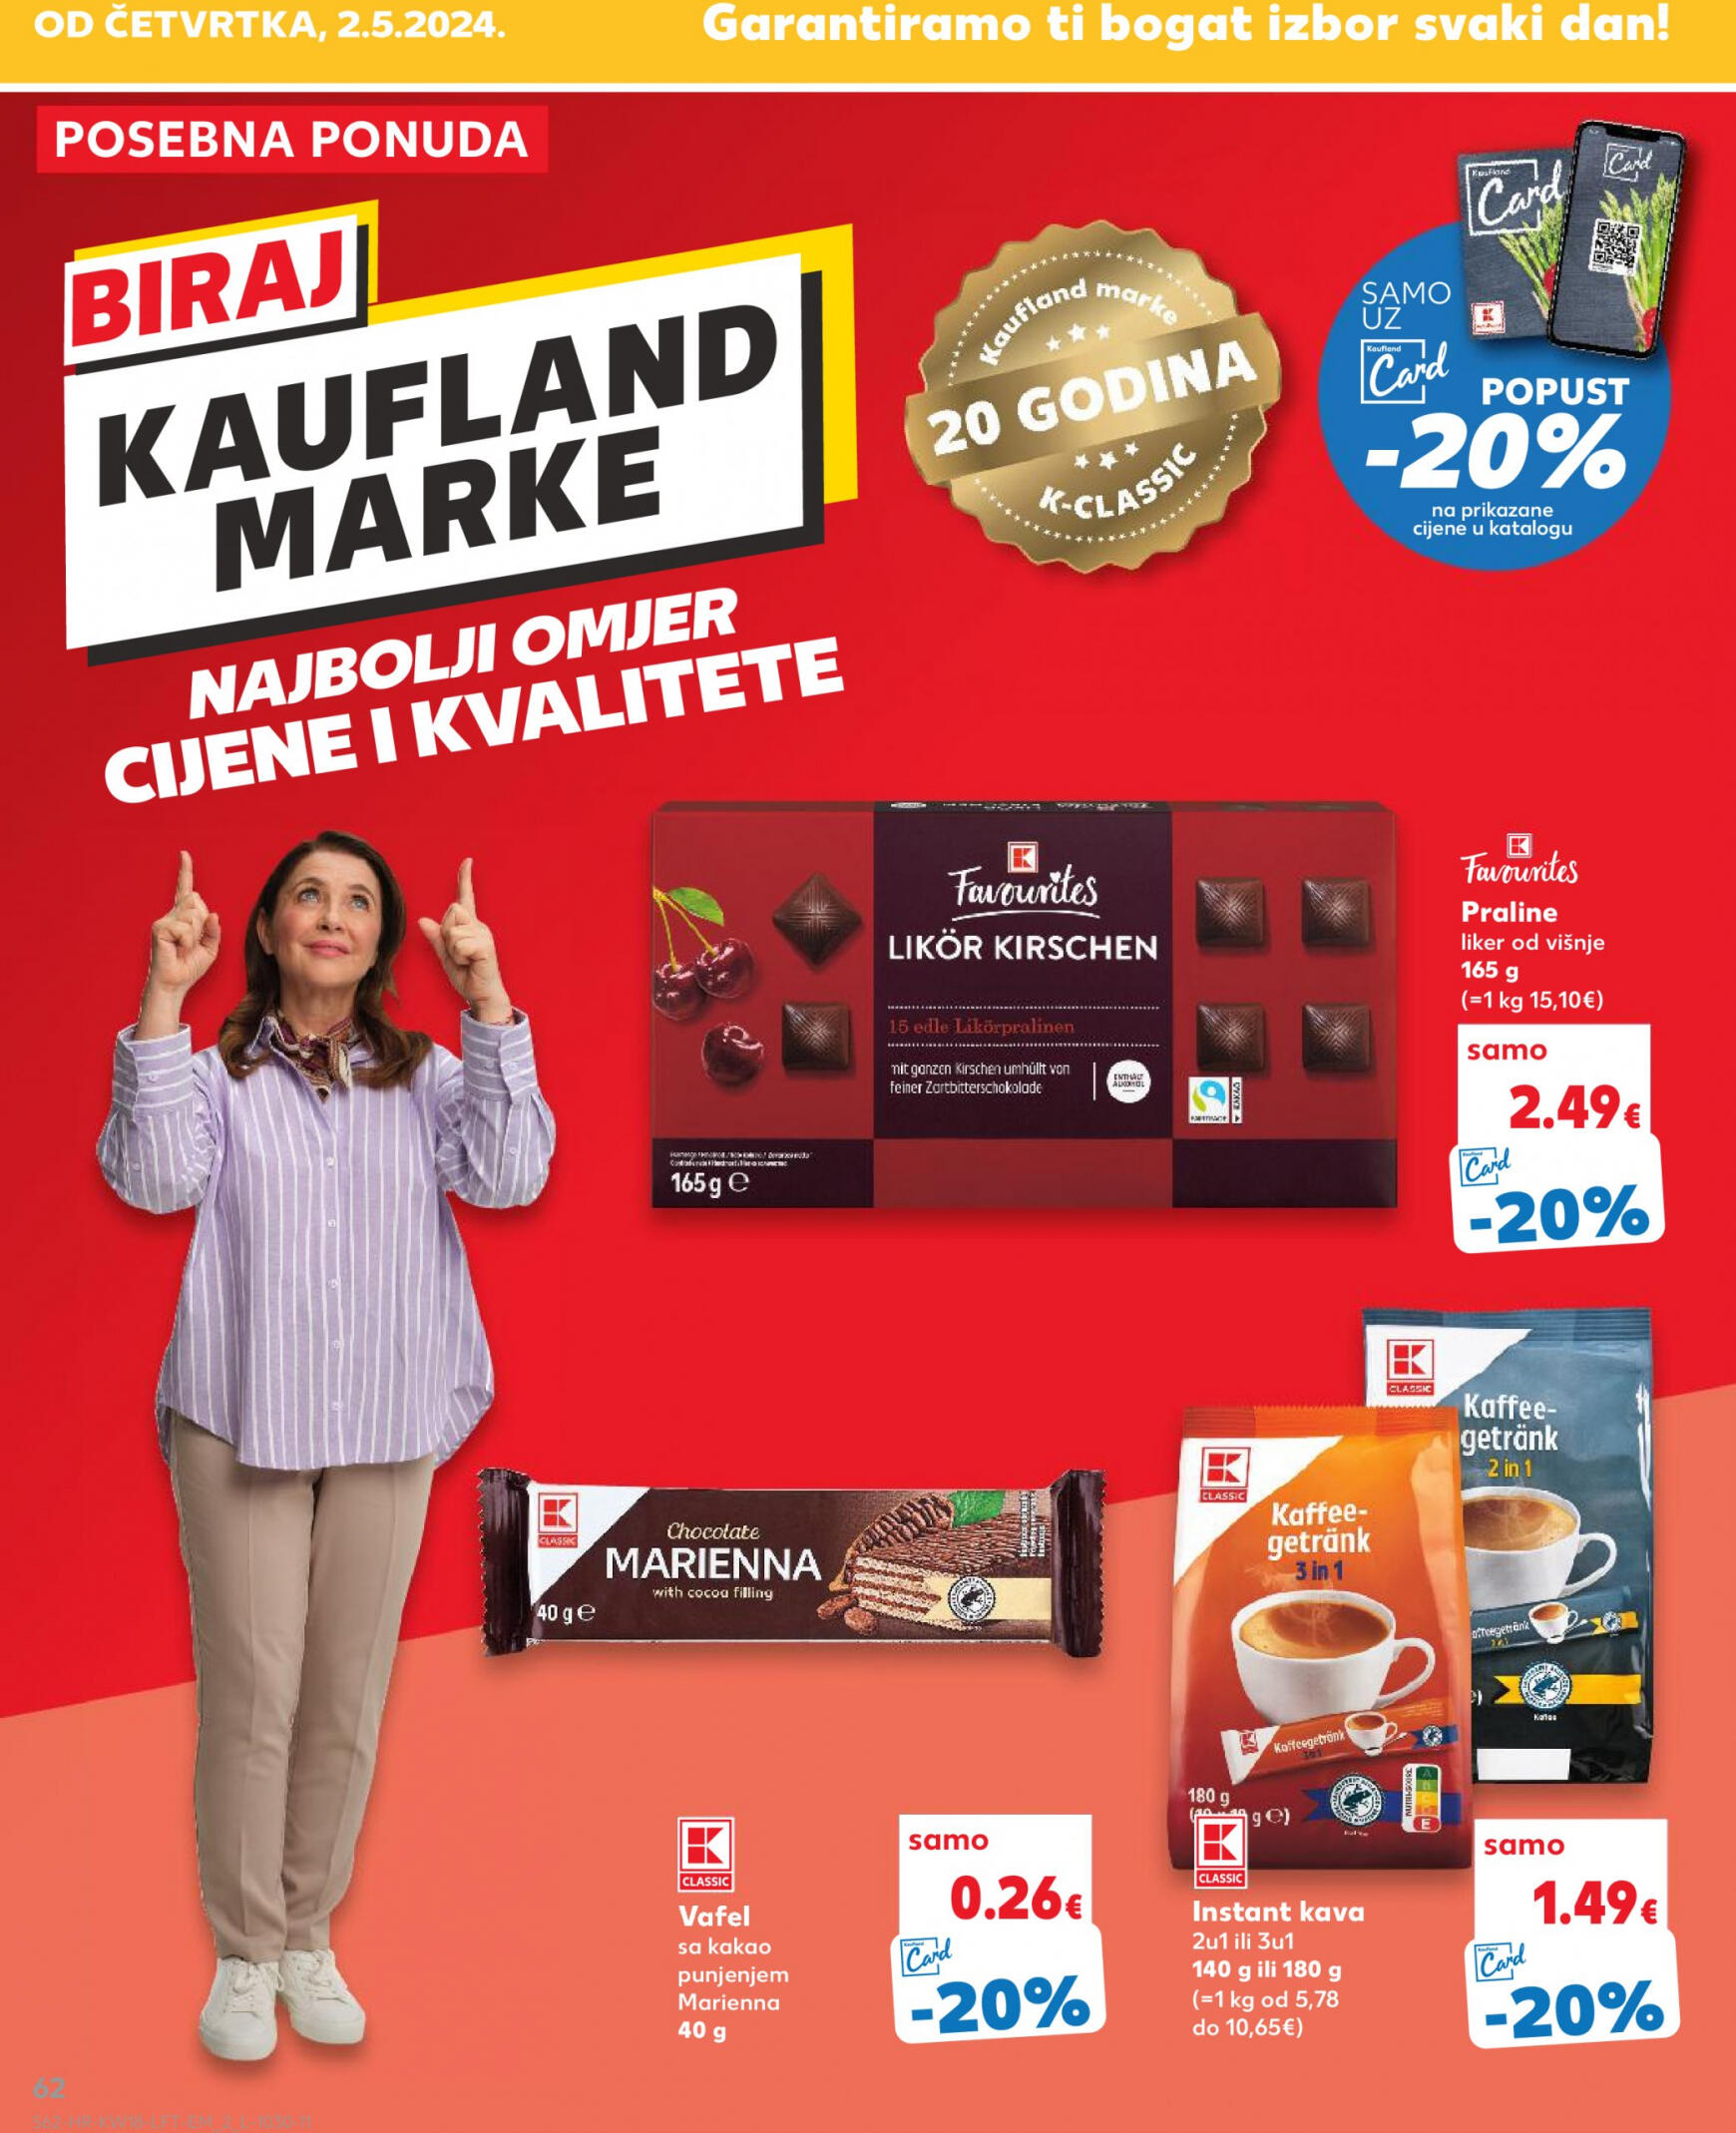 kaufland - Novi katalog Kaufland 02.05. - 07.05. - page: 62